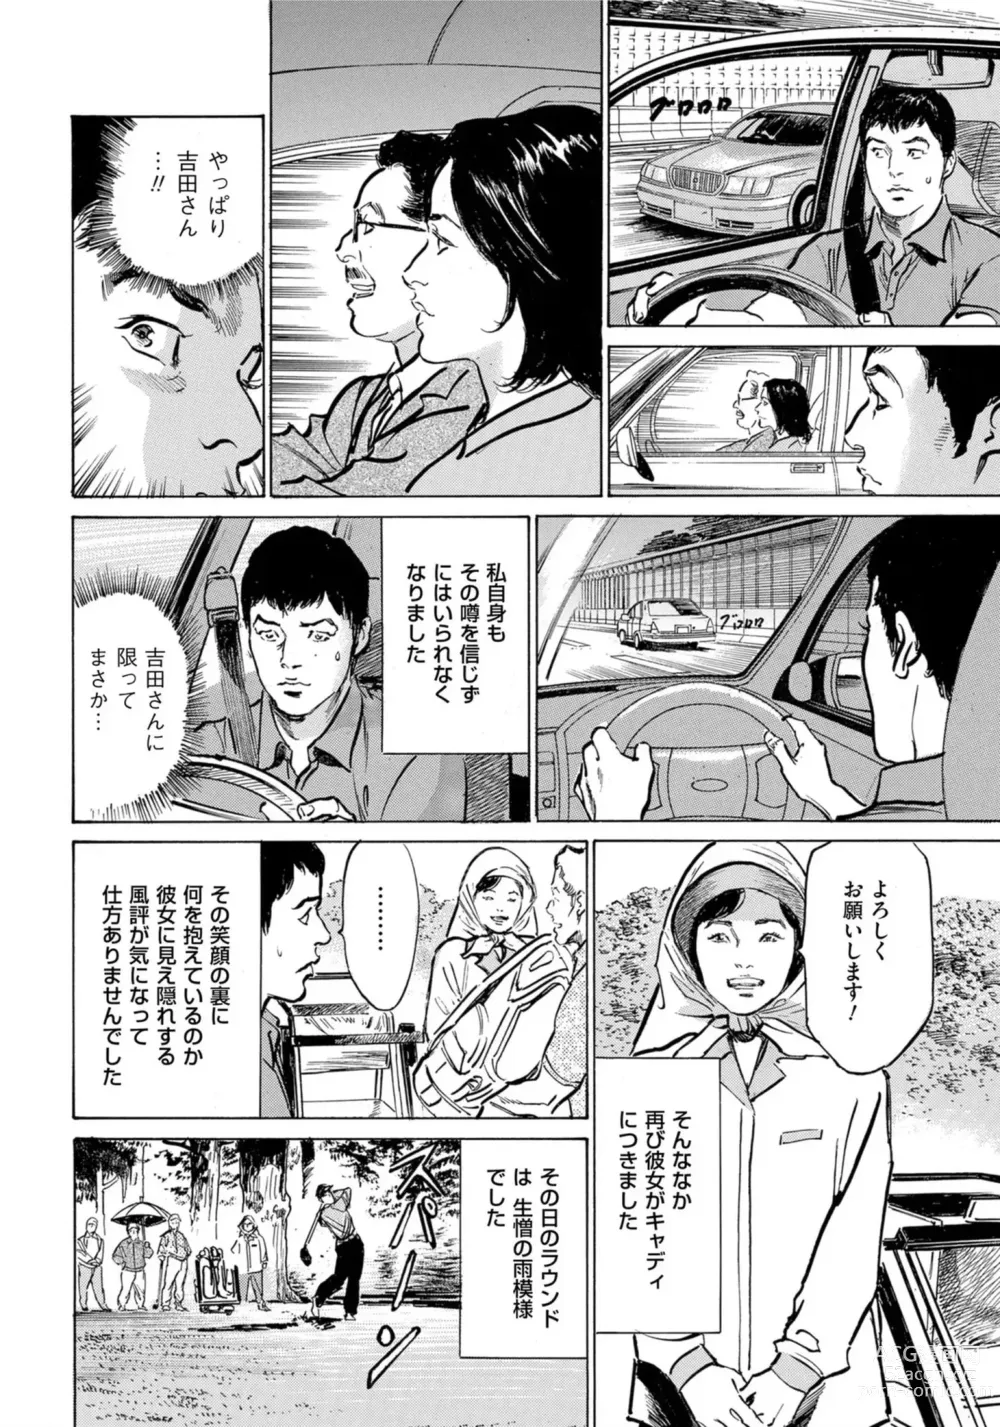 Page 7 of manga Hontou ni Atta Omowazu Zawatsuku Totteoki no Hanashi 14 episodes